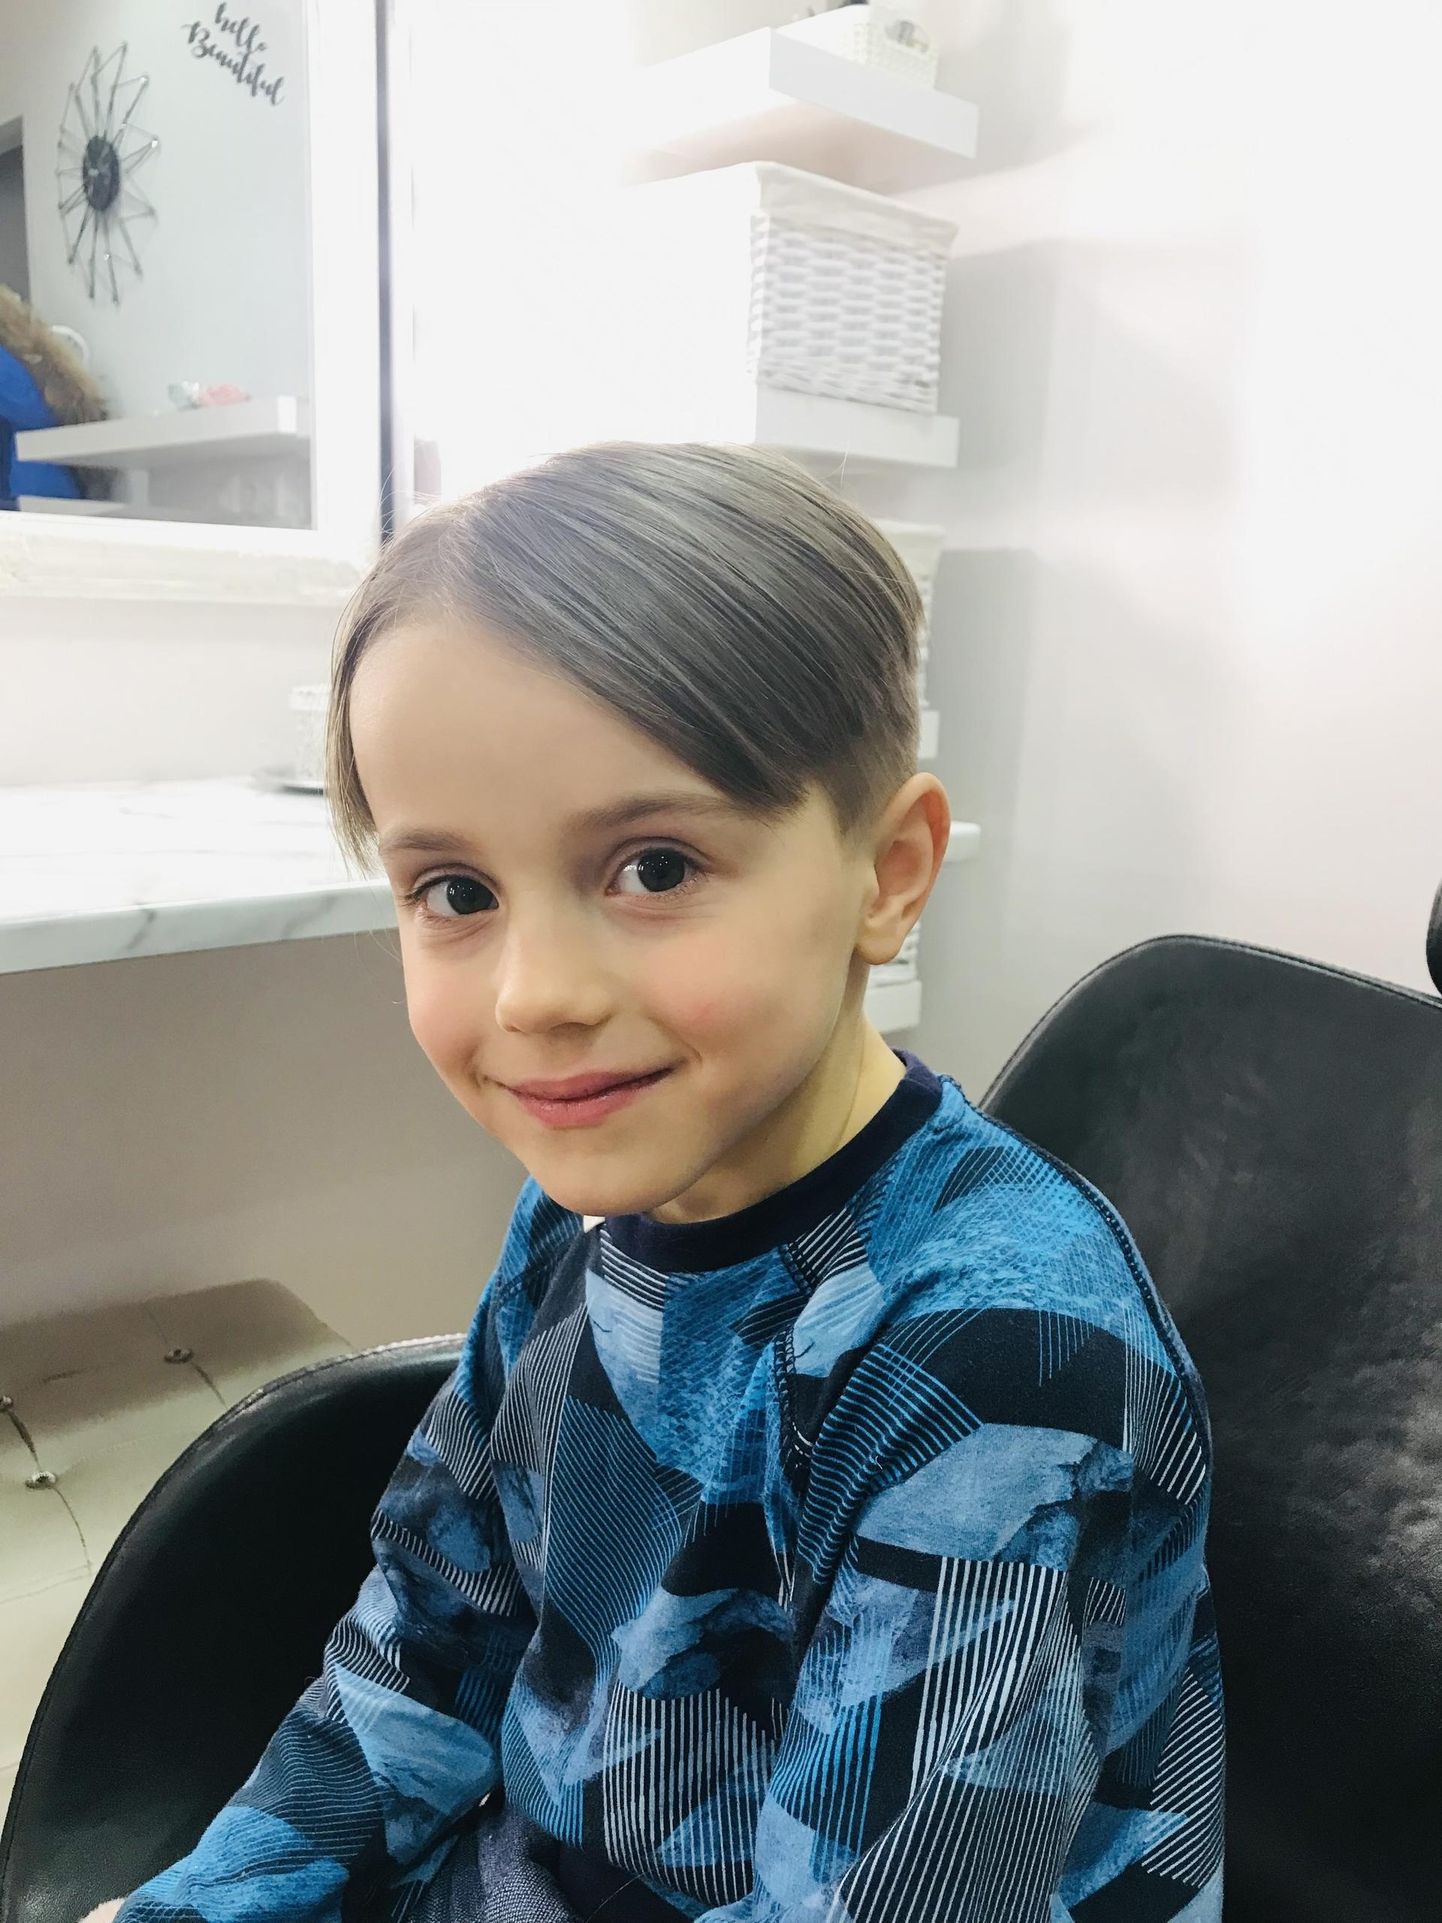 Якоб пожертвовал свои волосы для онкобольных детей.